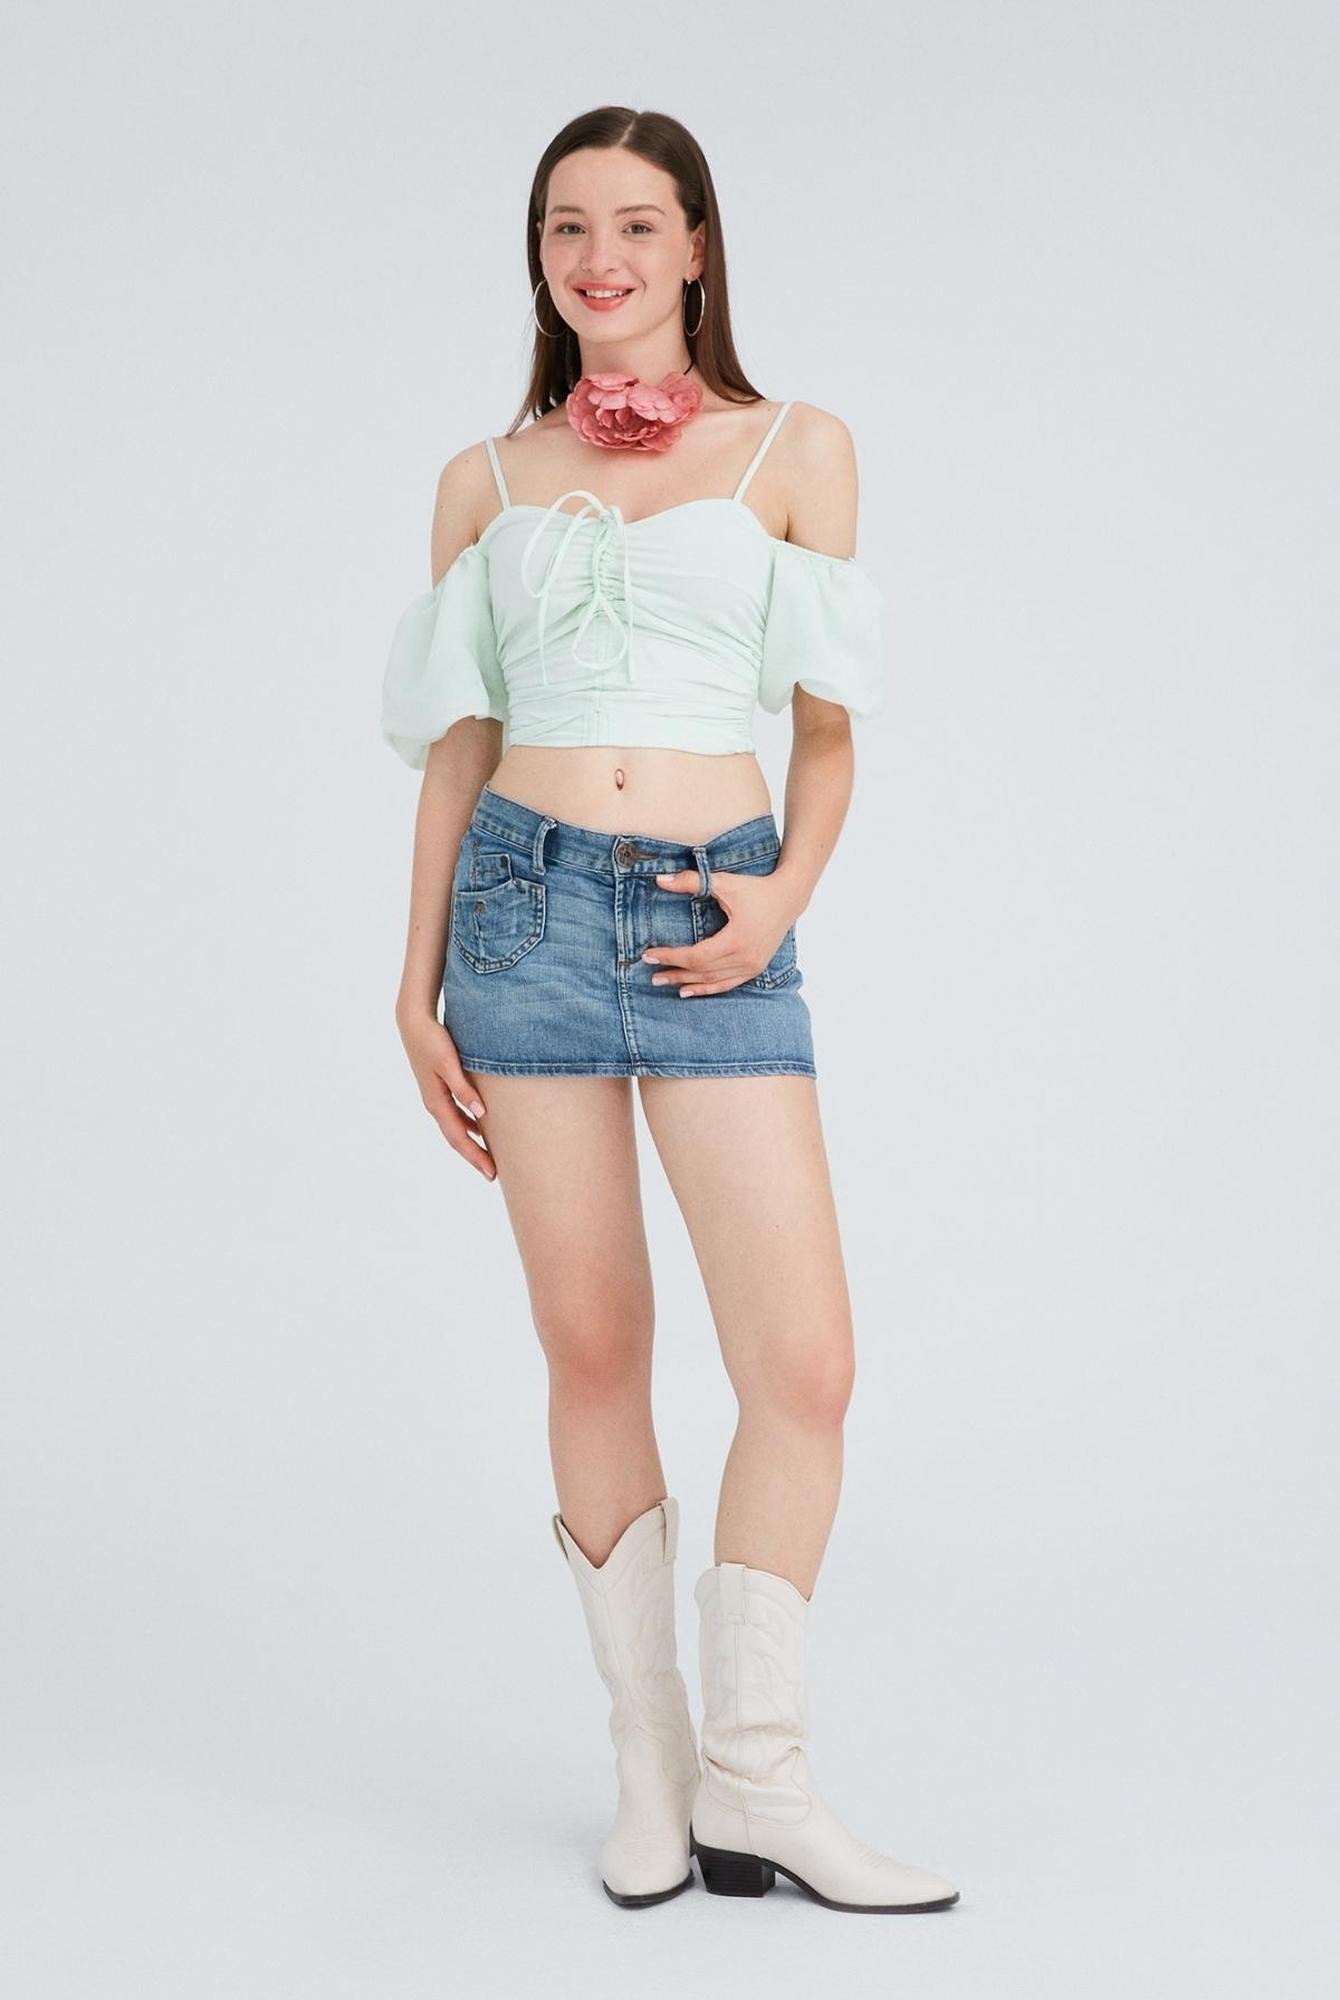  Ecrou Kadın Mint Balon Kol Önü Büzgülü Crop Bluz